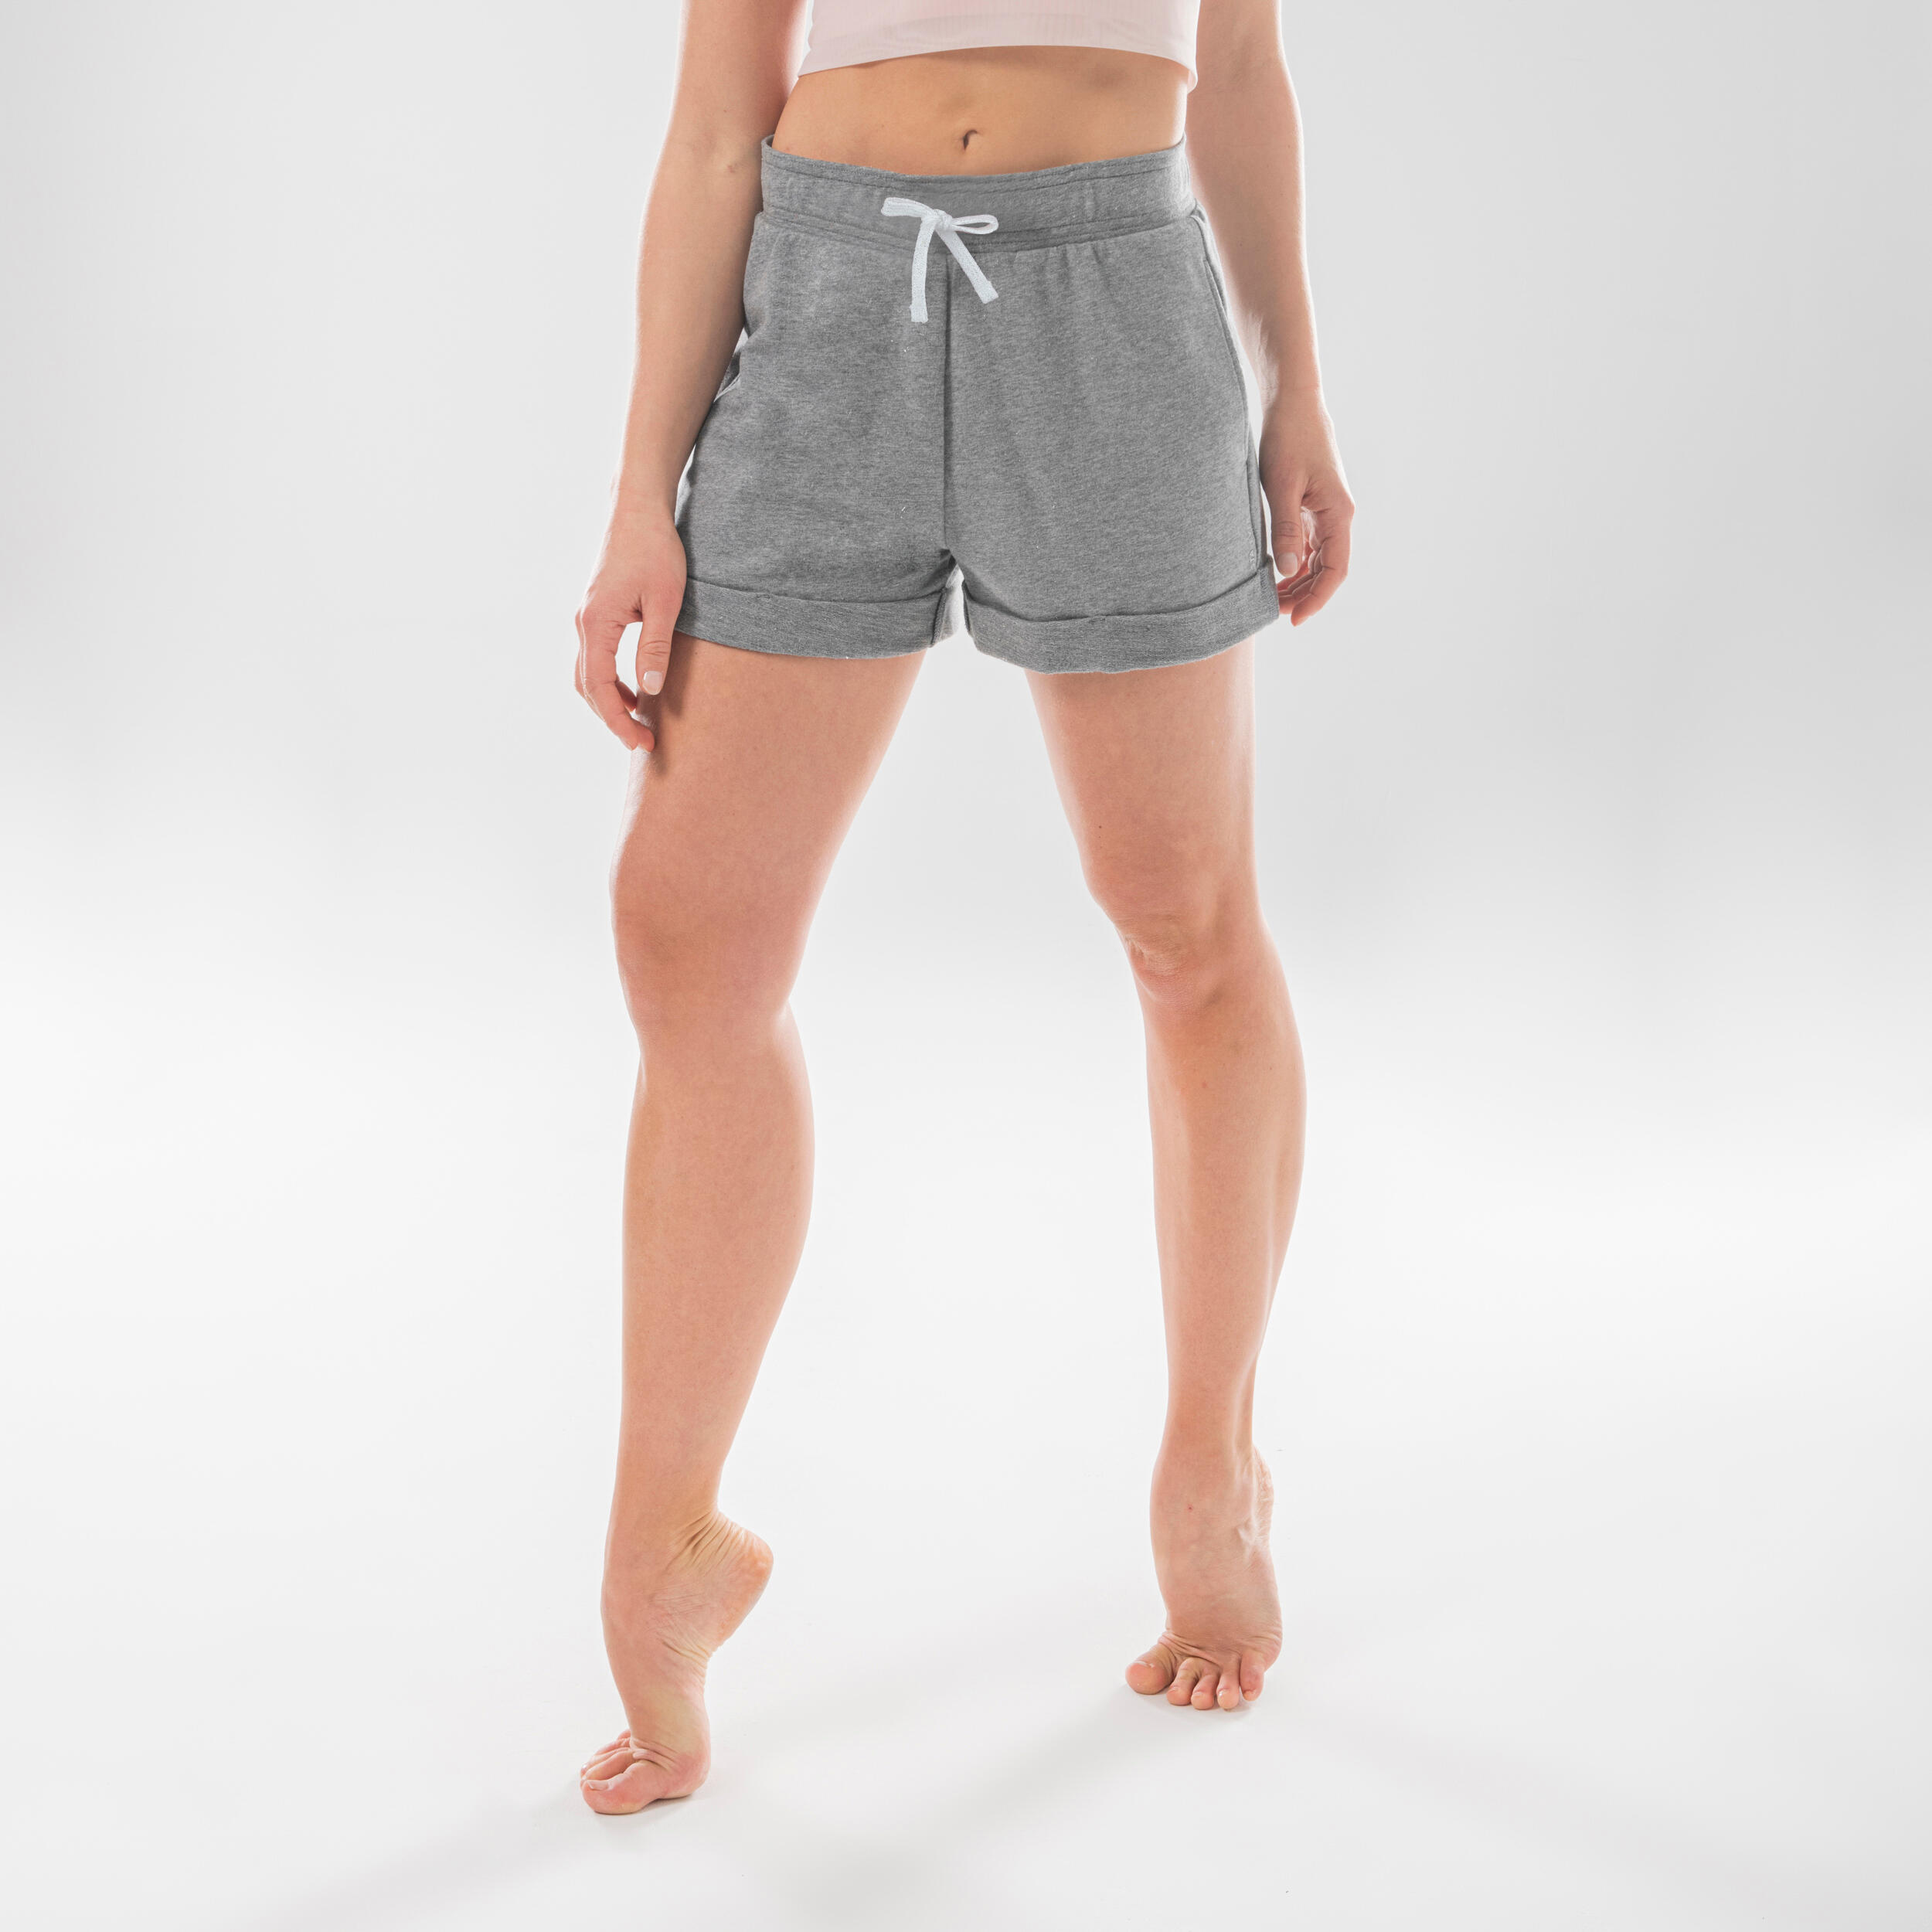 Women's Modern Dance High-Waisted Shorts - Grey 4/6